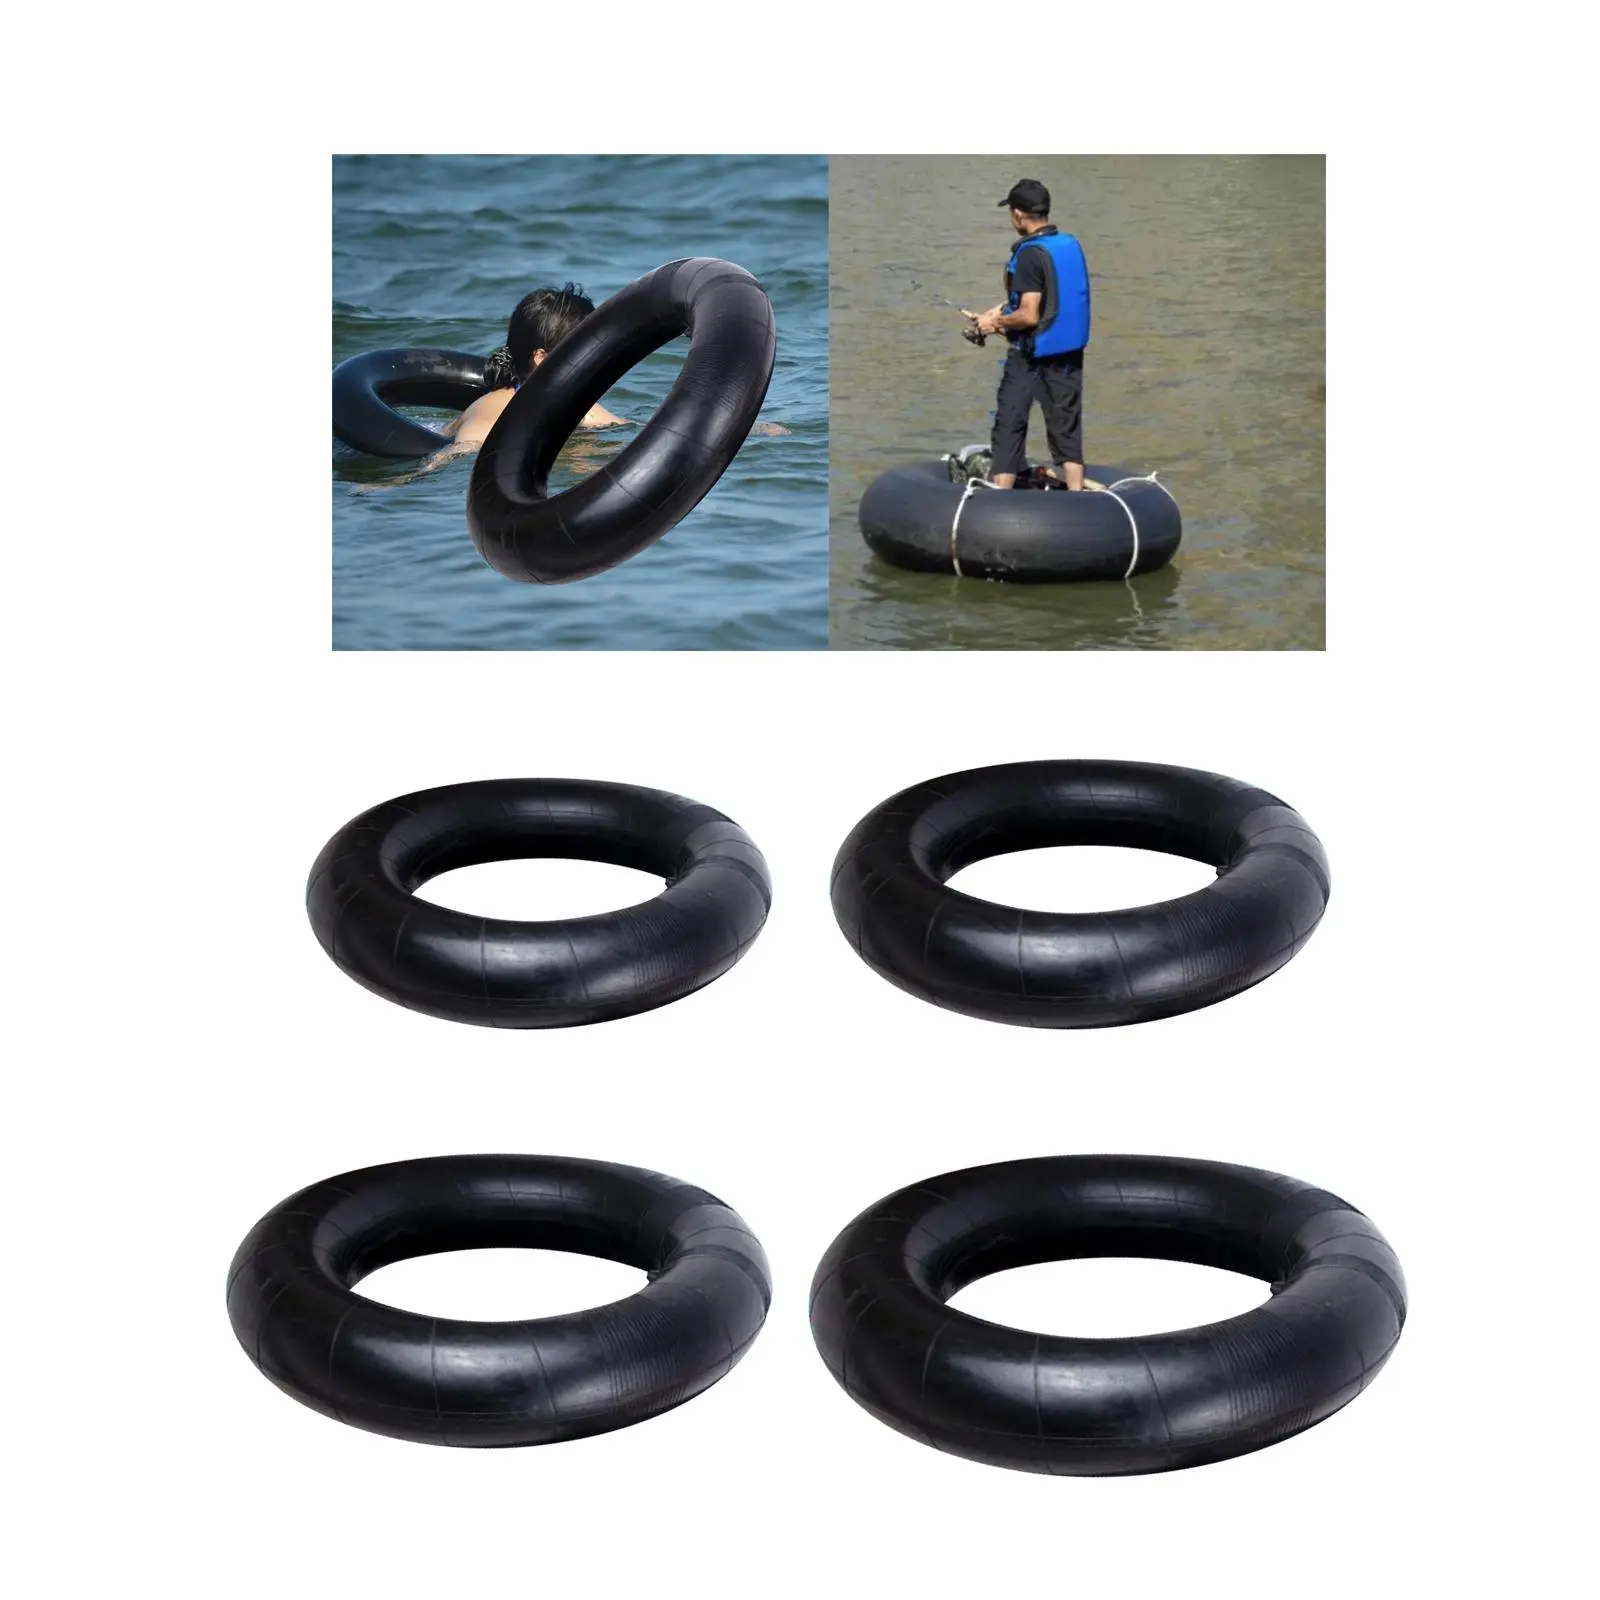 River Tube for Floating Durable Heavy Duty Rubber Swim Tubes Inflatable Pool Float Tube Inner Tube Snow Tube River Rafts